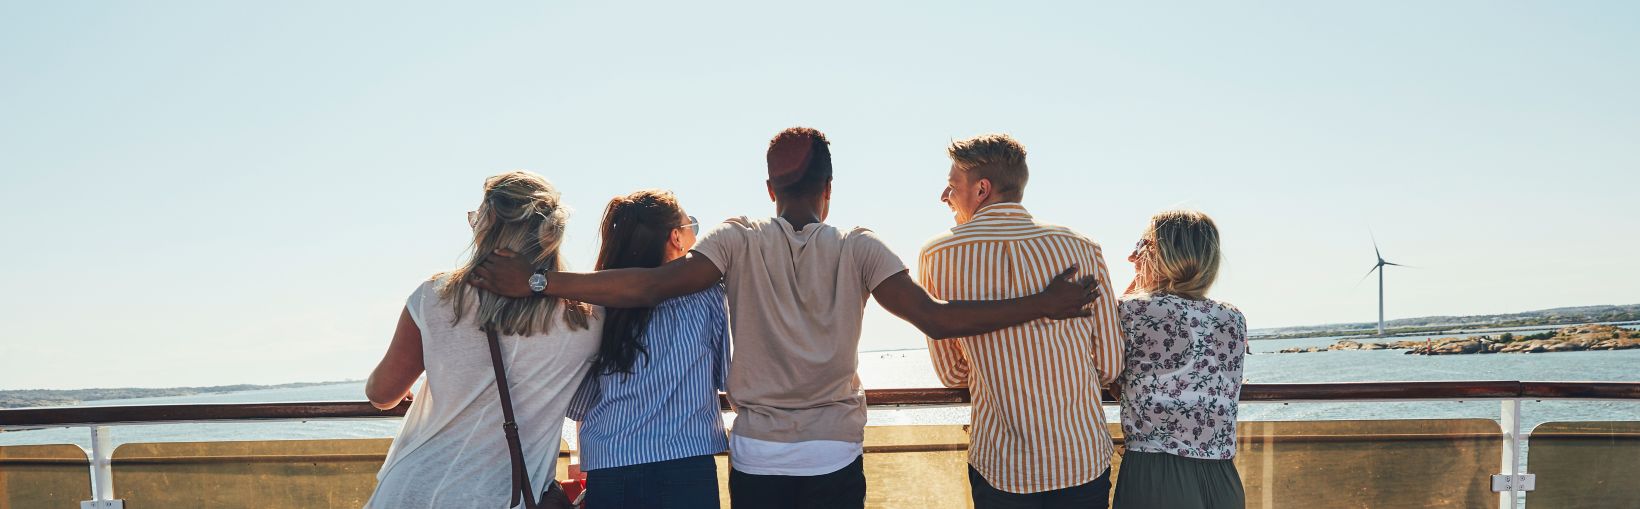 Vy bakifrån av fem vänner som tittar ut mot havet från soldäcket på en färja